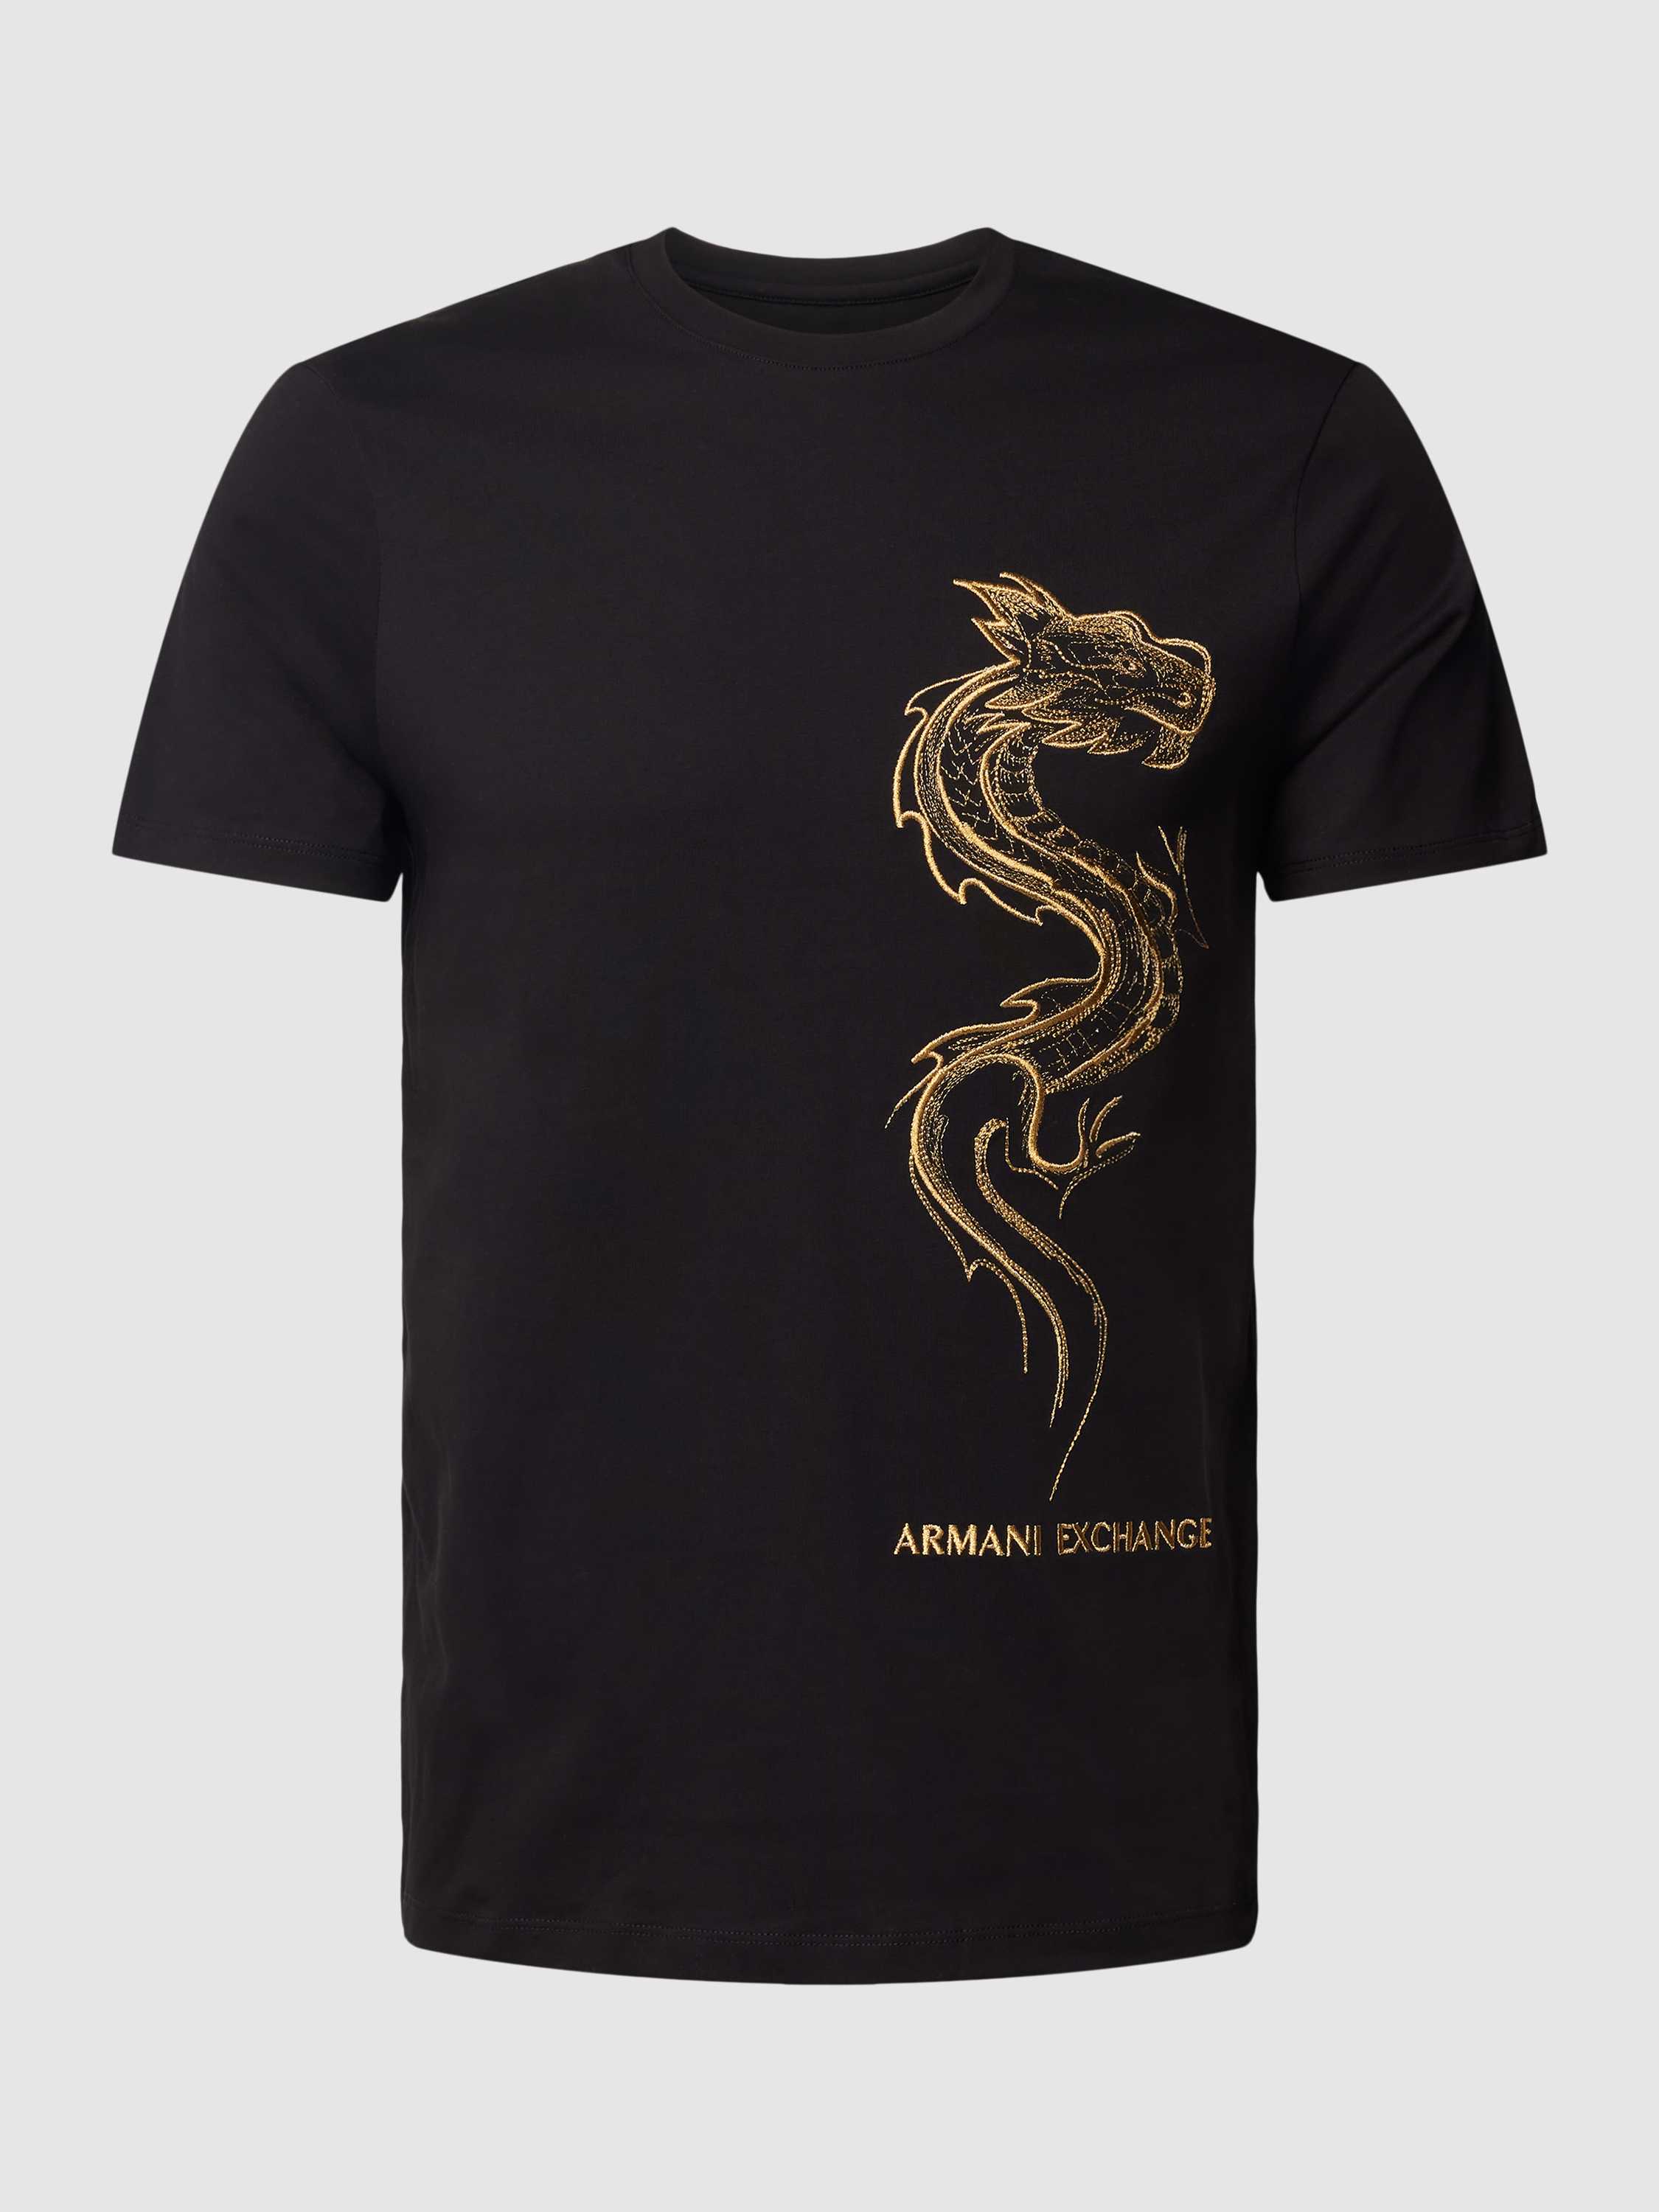 Armani Exchange T-shirt met motiefstitching model 'Chinese Big Dragon'